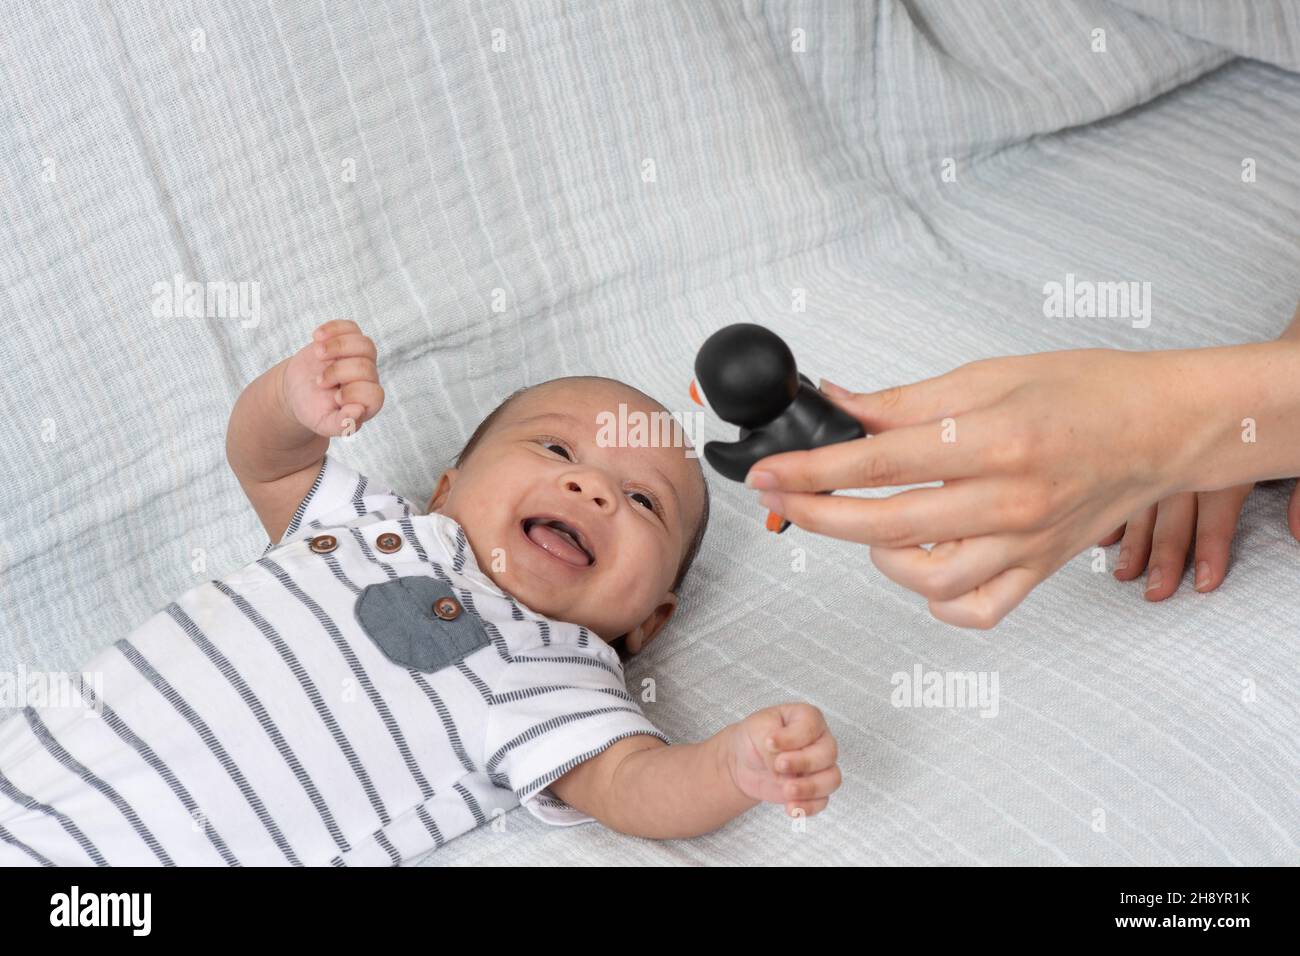 2 Monate altes Baby (früh) Nahaufnahme auf dem Rücken lacht als Reaktion auf schwarz-weißes Pinguin-Spielzeug mit hohem Kontrast Stockfoto